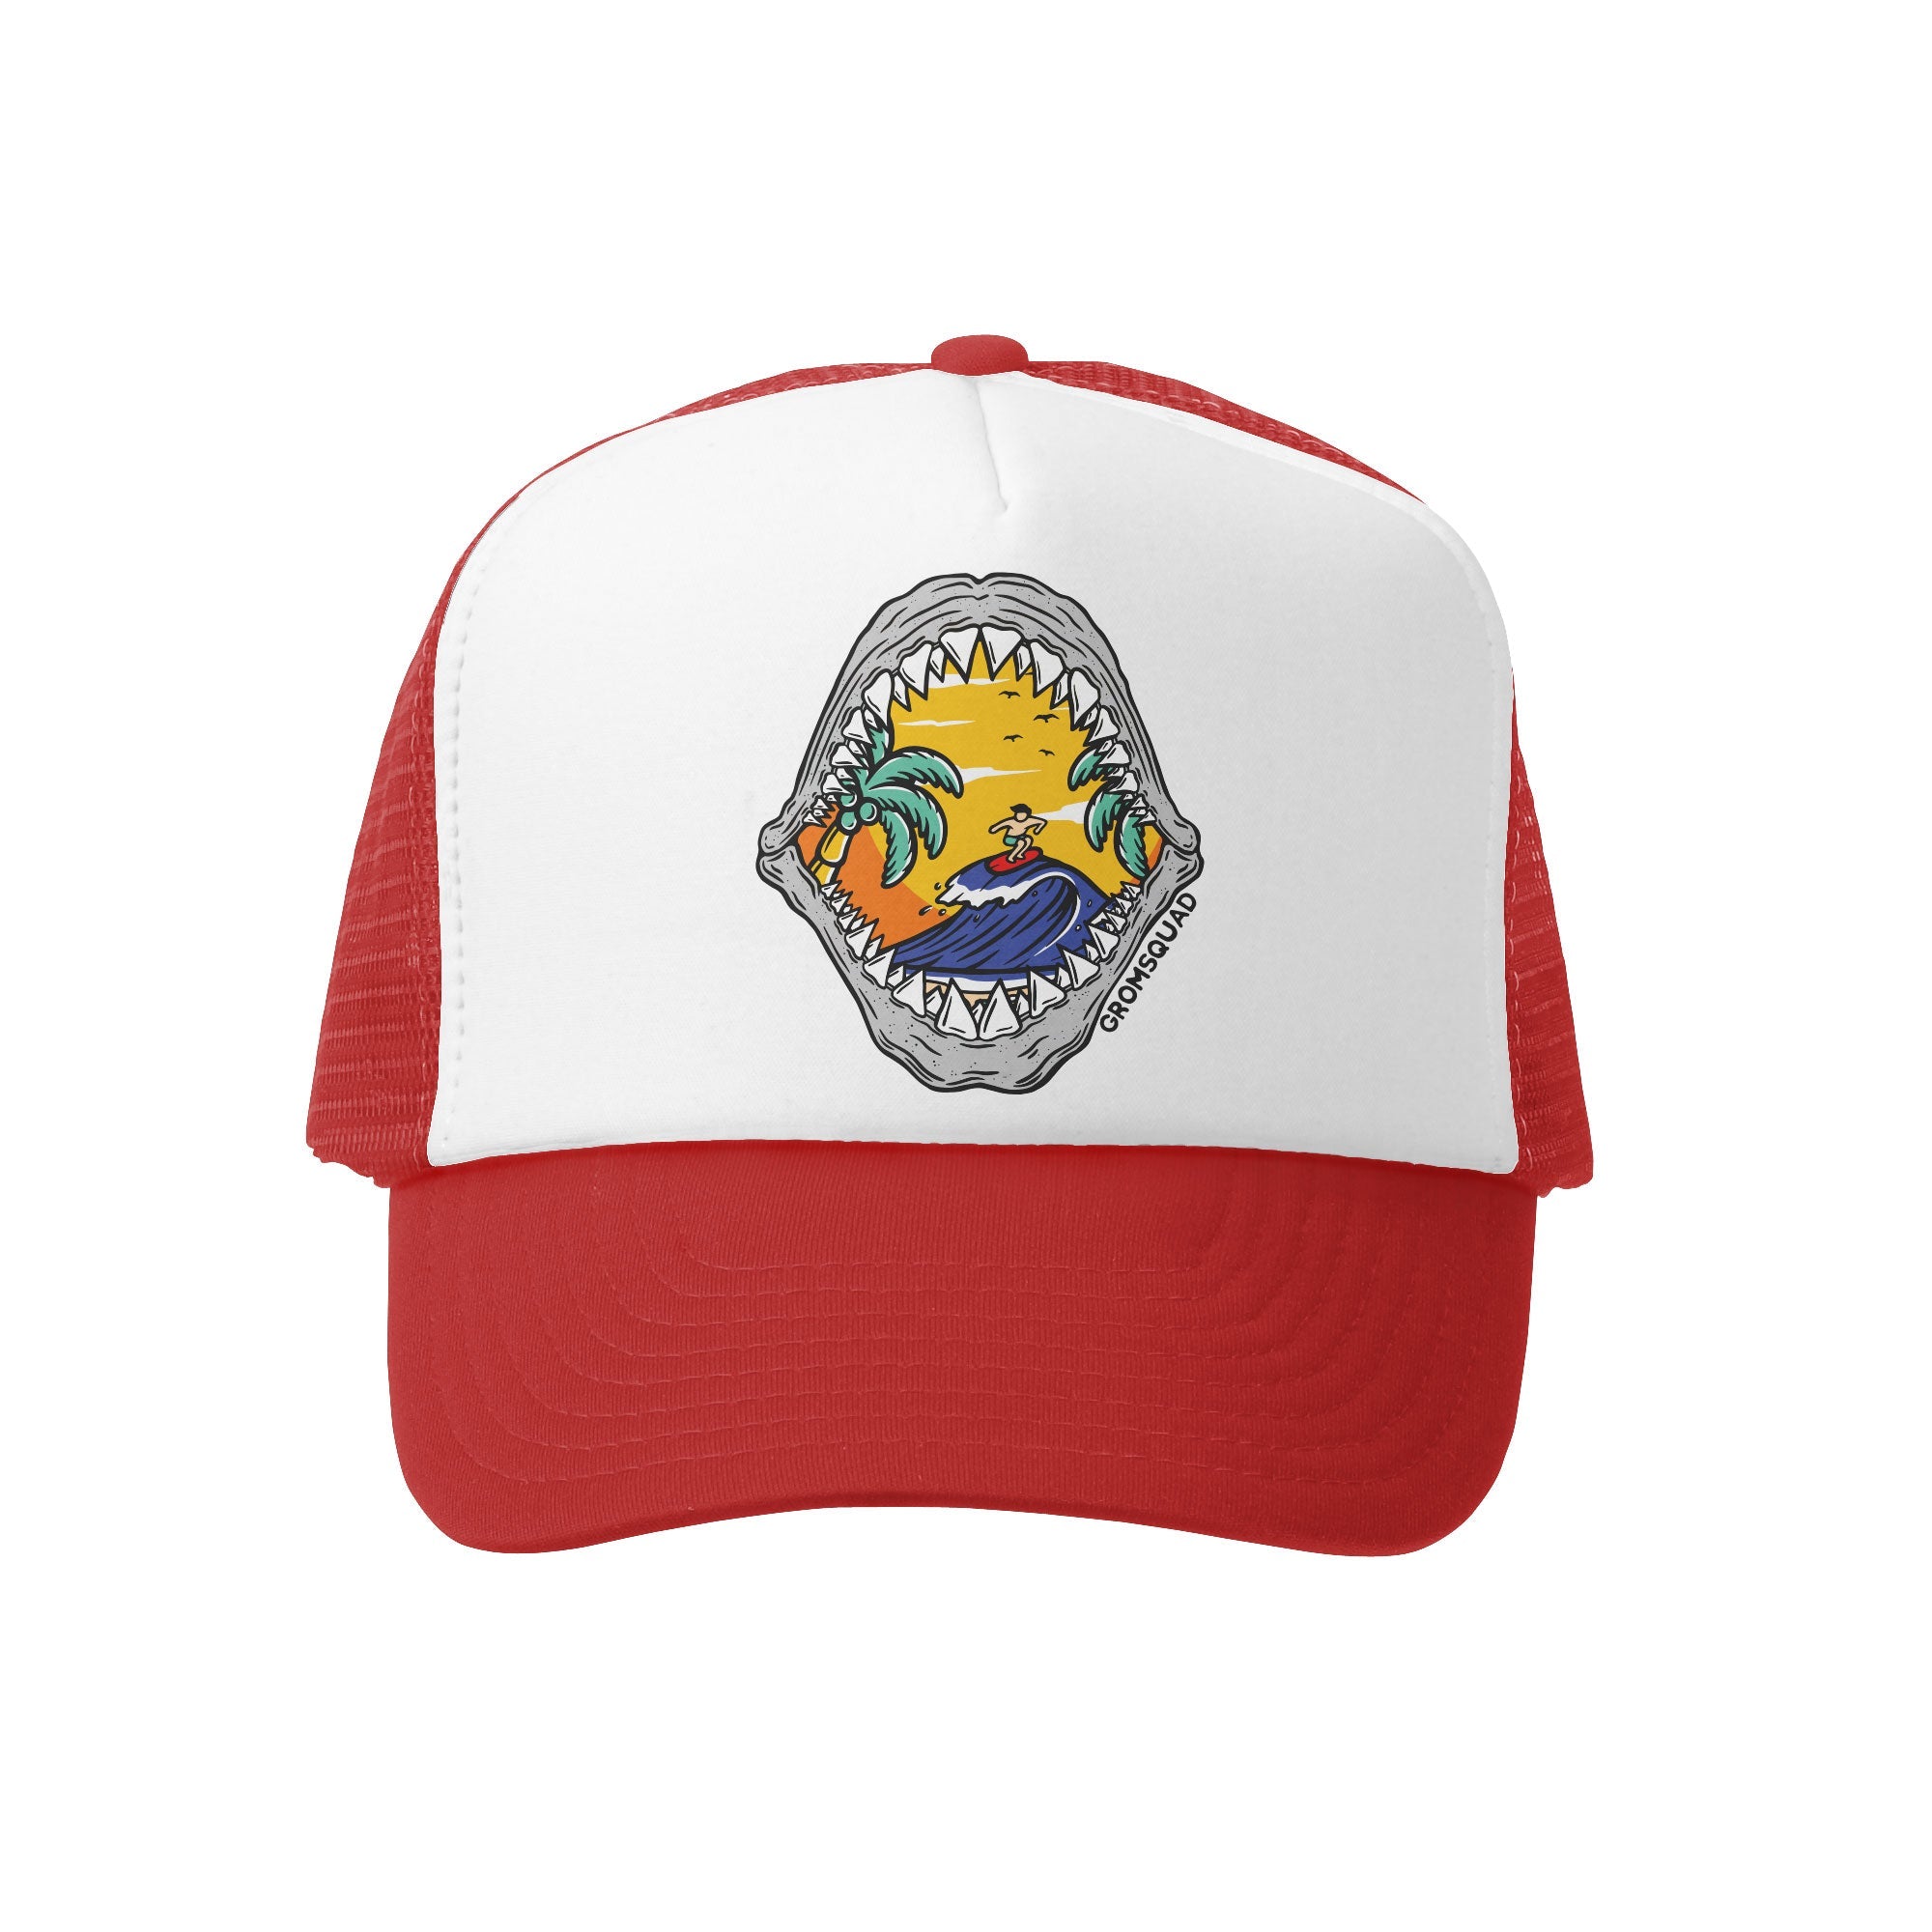 Grom Squad Shark Bite Trucker Hat Red/White Big